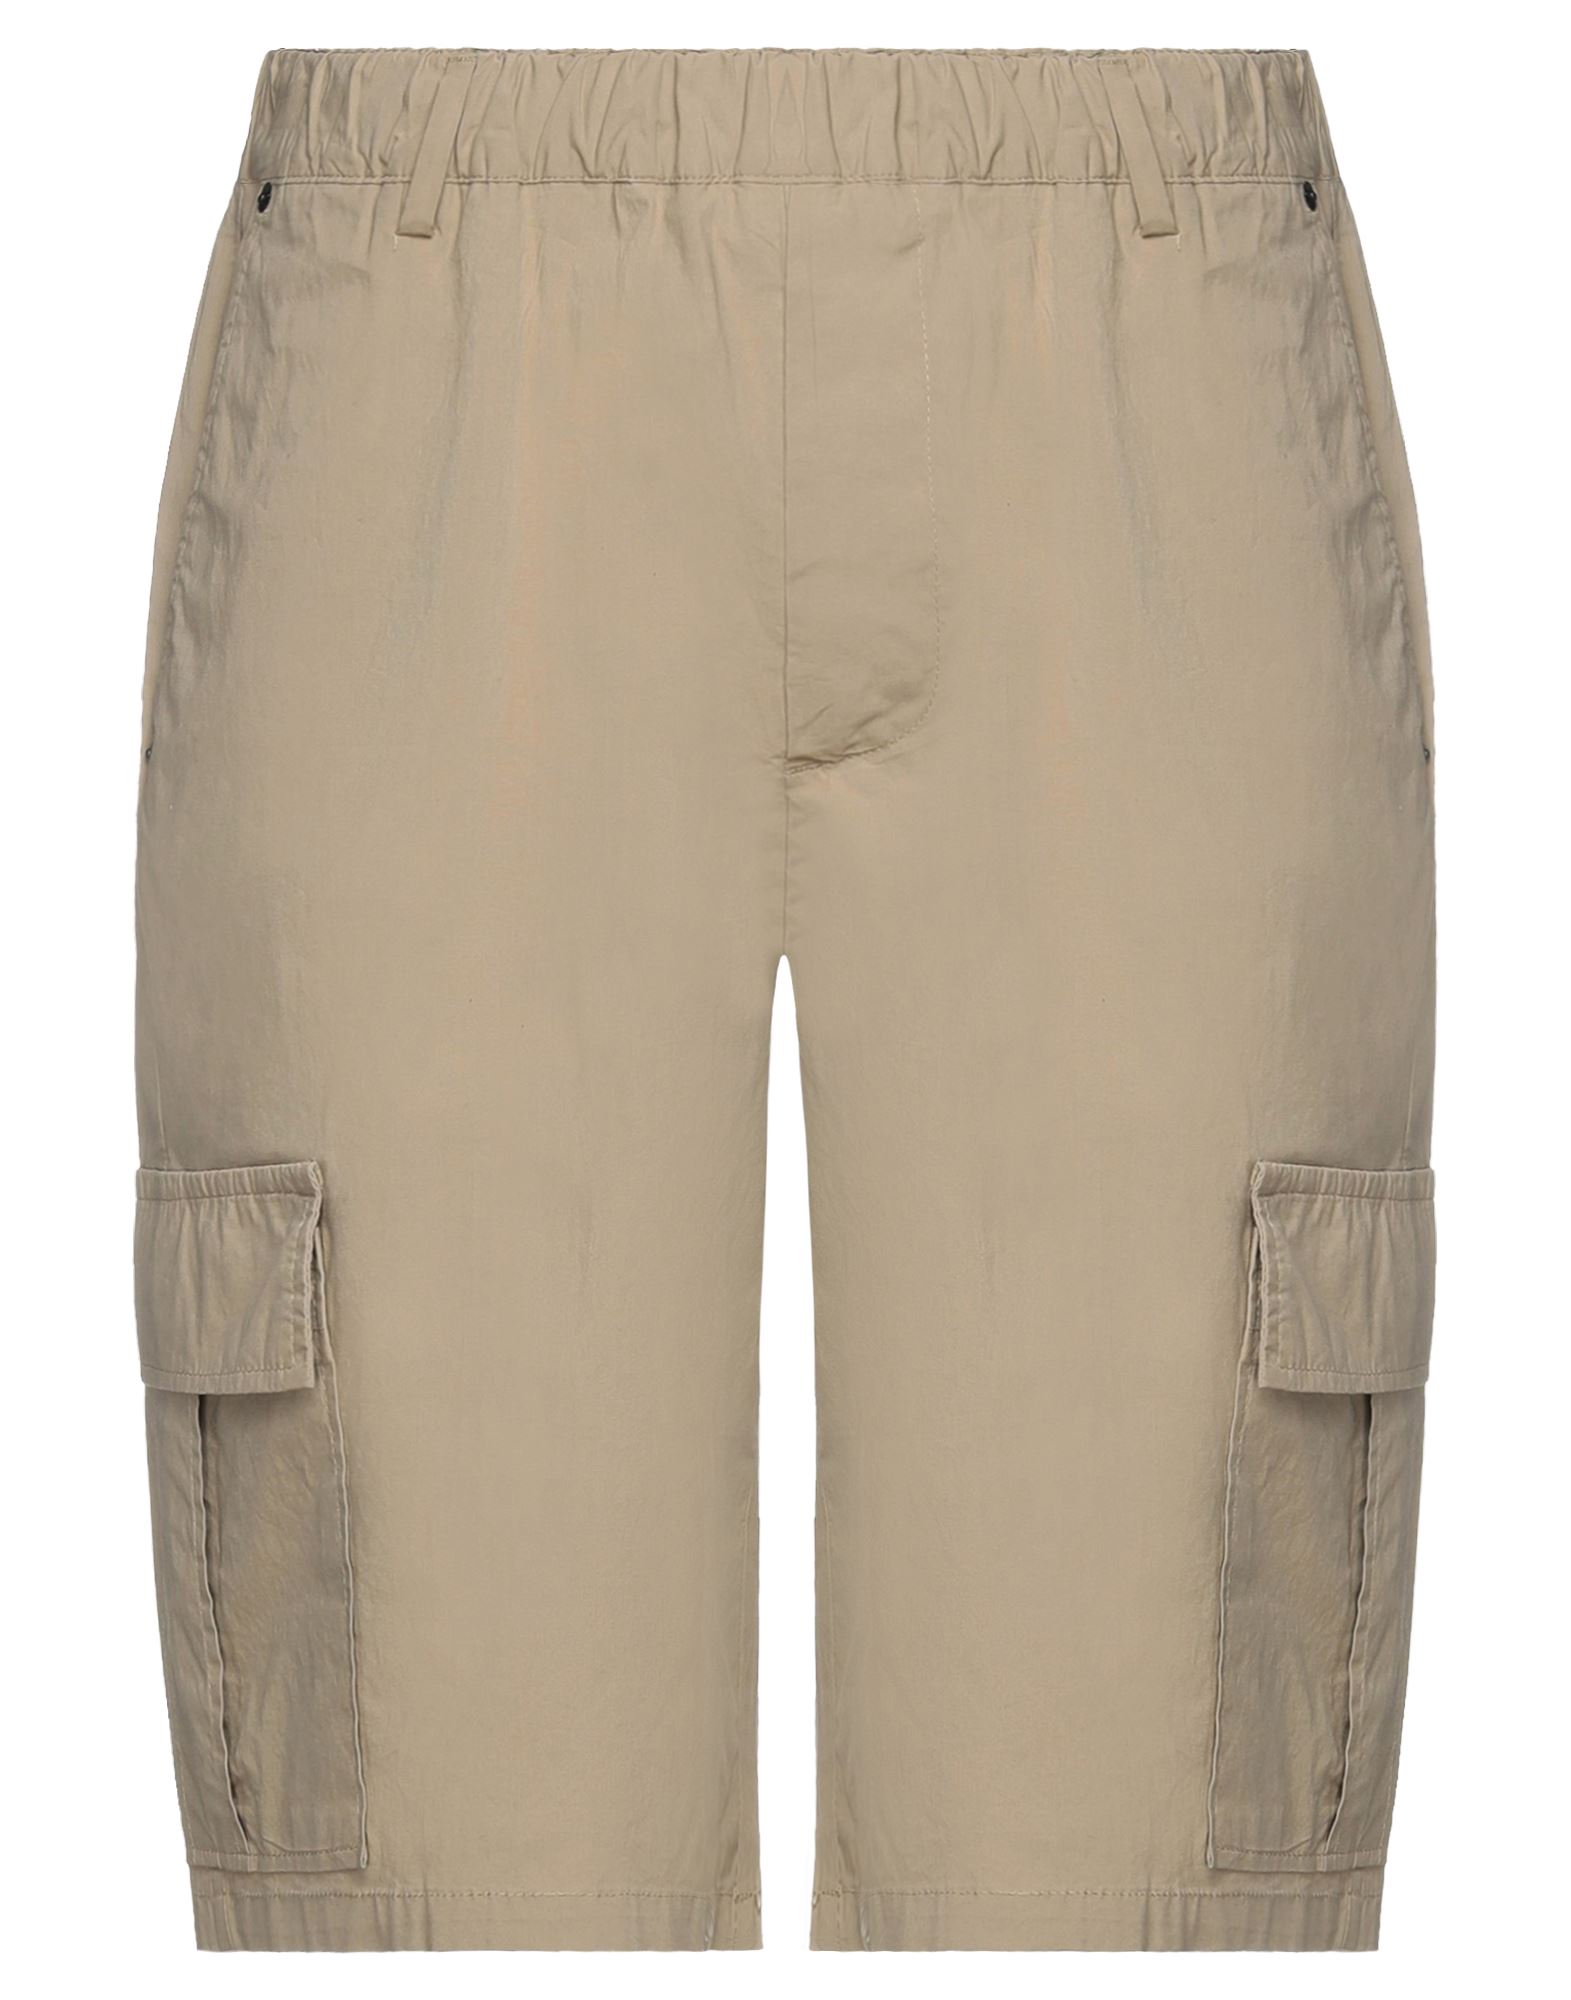 Pmds Premium Mood Denim Superior Man Shorts & Bermuda Shorts Beige Size 33 Cotton, Elastane